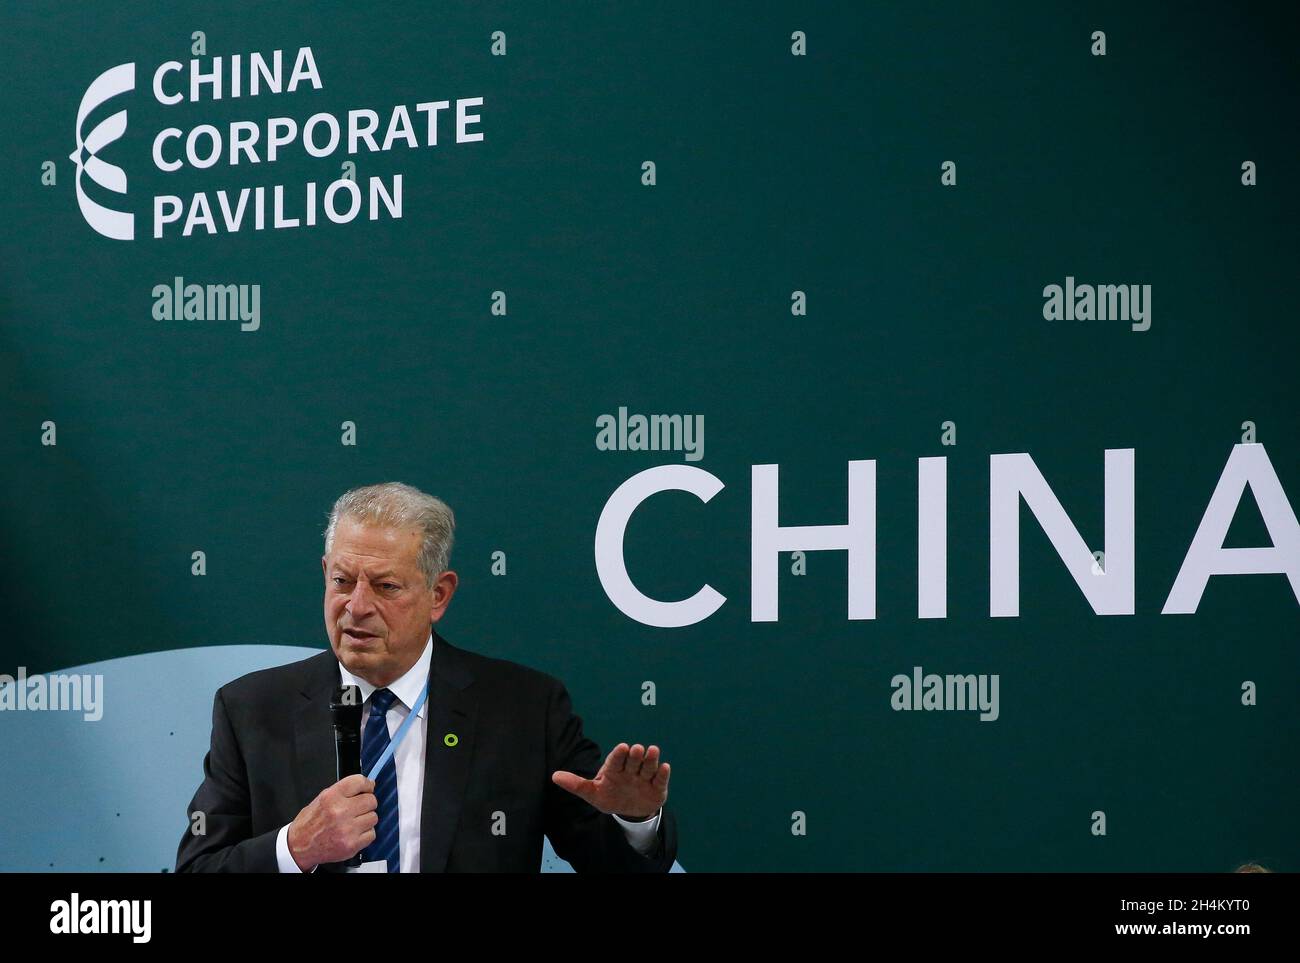 Glasgow, Großbritannien. November 2021. Der ehemalige US-Vizepräsident und Umweltschützer Al Gore spricht bei der Eröffnungsveranstaltung des China Corporate Pavilion auf der laufenden 26. Sitzung der Konferenz der Vertragsparteien (COP26) des UN-Rahmenübereinkommens über Klimaänderungen am 2. November 2021 in Glasgow, Schottland, Großbritannien. DAZU gehört das "politische gegenseitige Vertrauen zwischen Ländern, das für die globale Zusammenarbeit im Bereich des Klimawandels unerlässlich ist", sagt Al Gore. Quelle: Han Yan/Xinhua/Alamy Live News Stockfoto